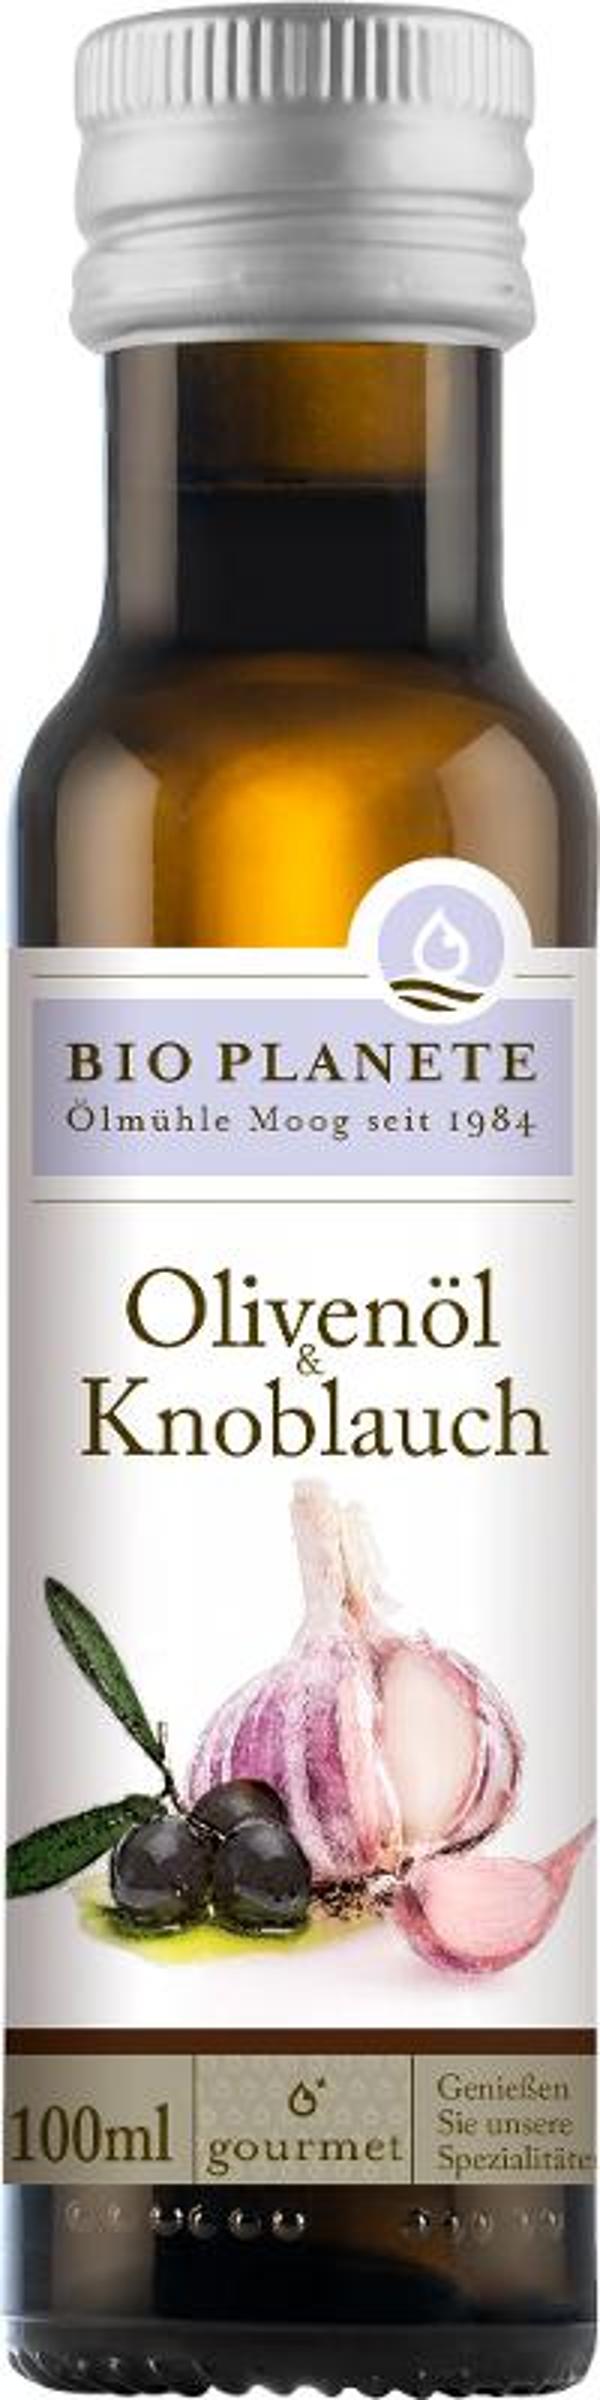 Produktfoto zu Olivenöl mit Knoblauch von Bio Planete